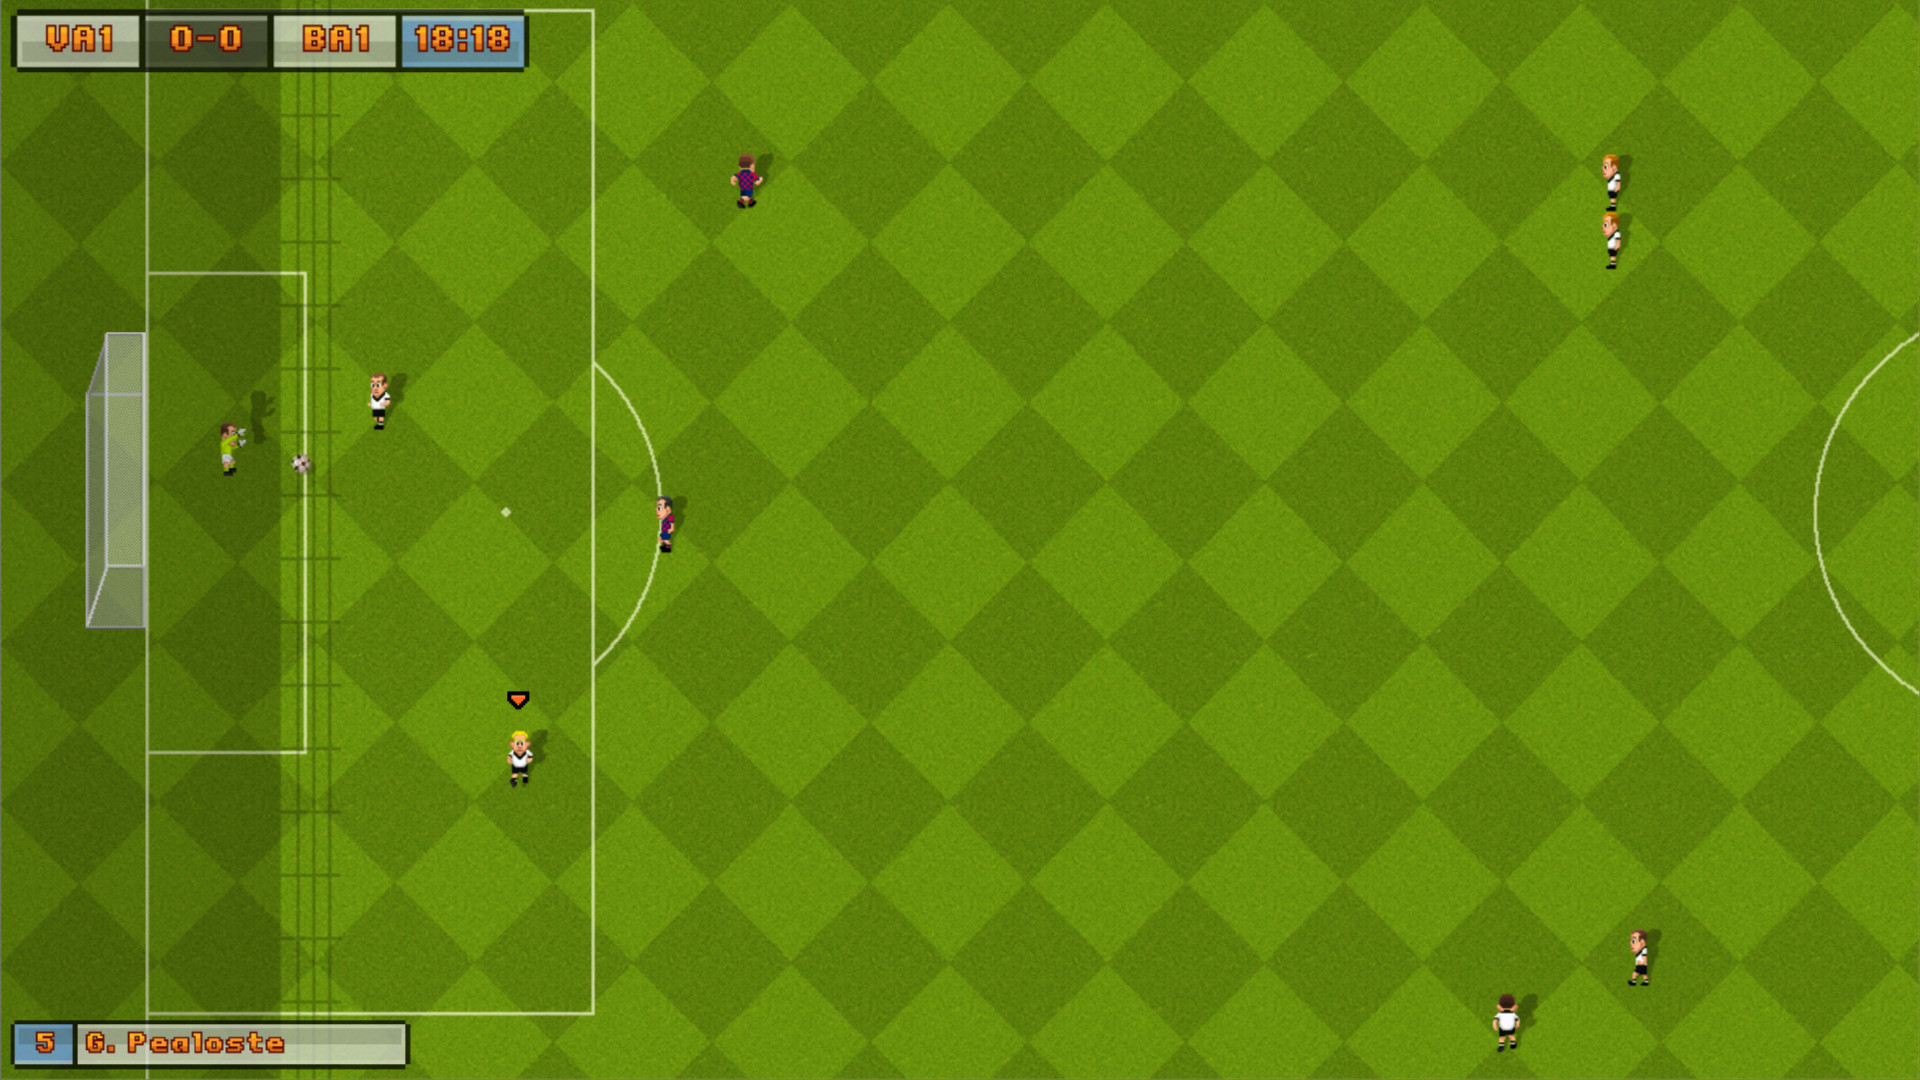 16-Bit Soccer Demo Featured Screenshot #1